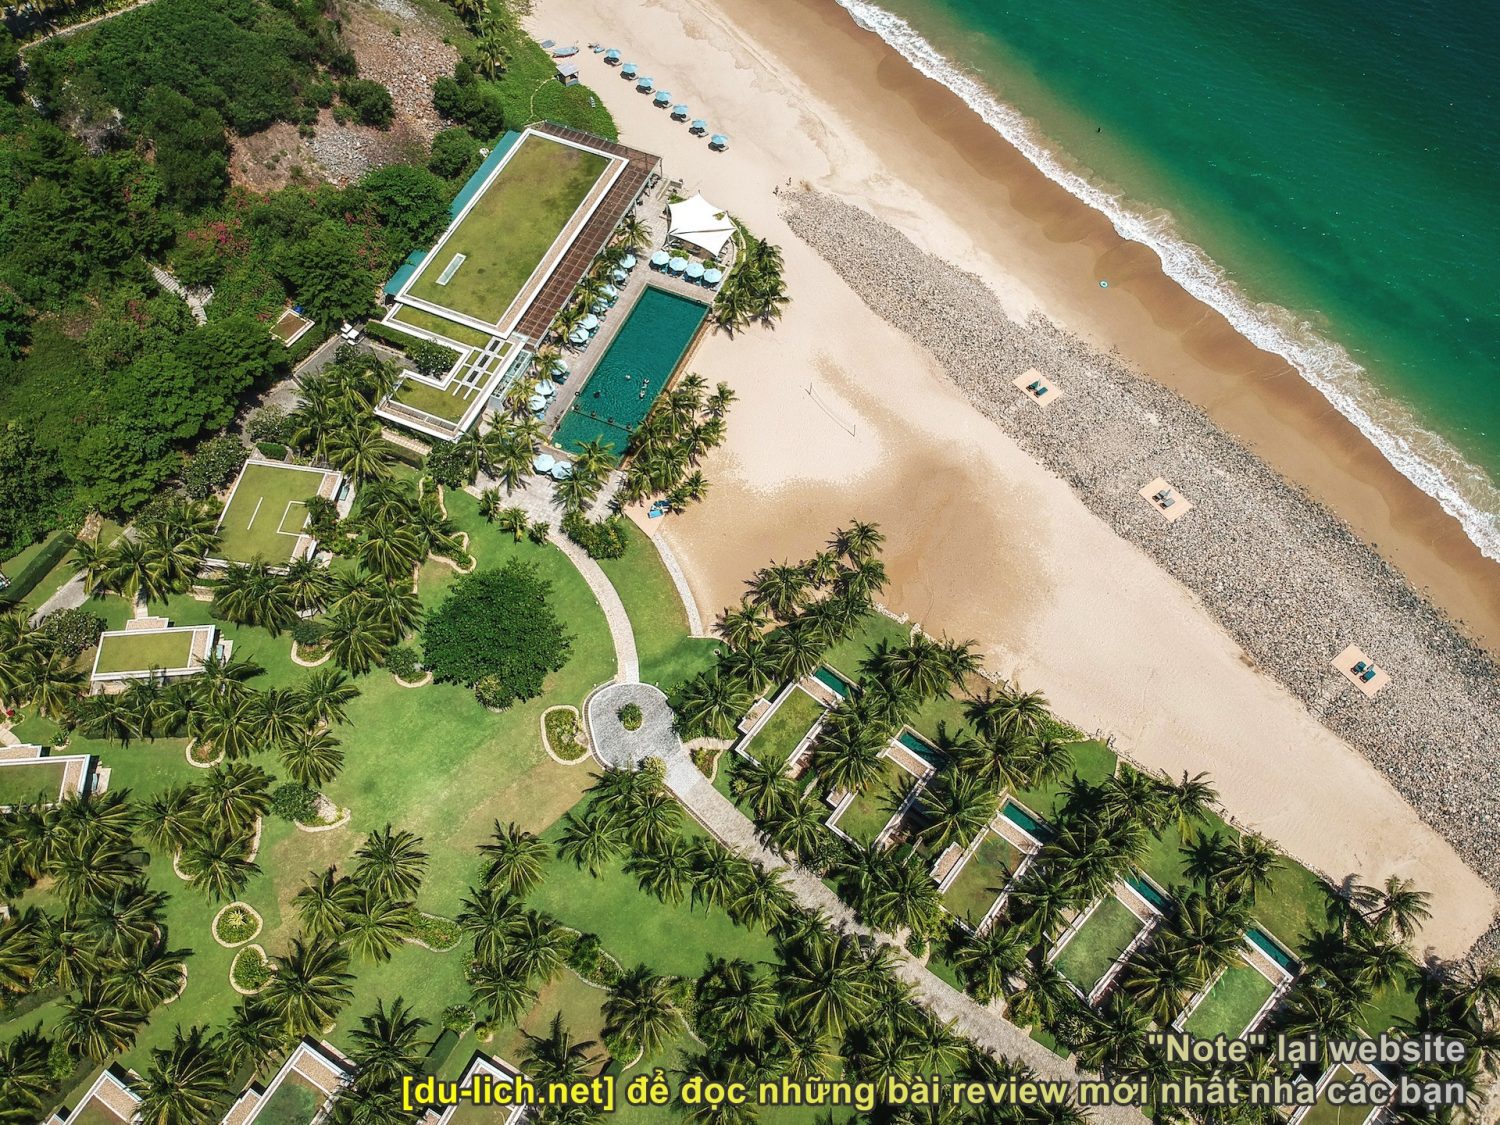 Hình ảnh Mia Resort - một trong những resort có bãi biển riêng ở Nha Trang